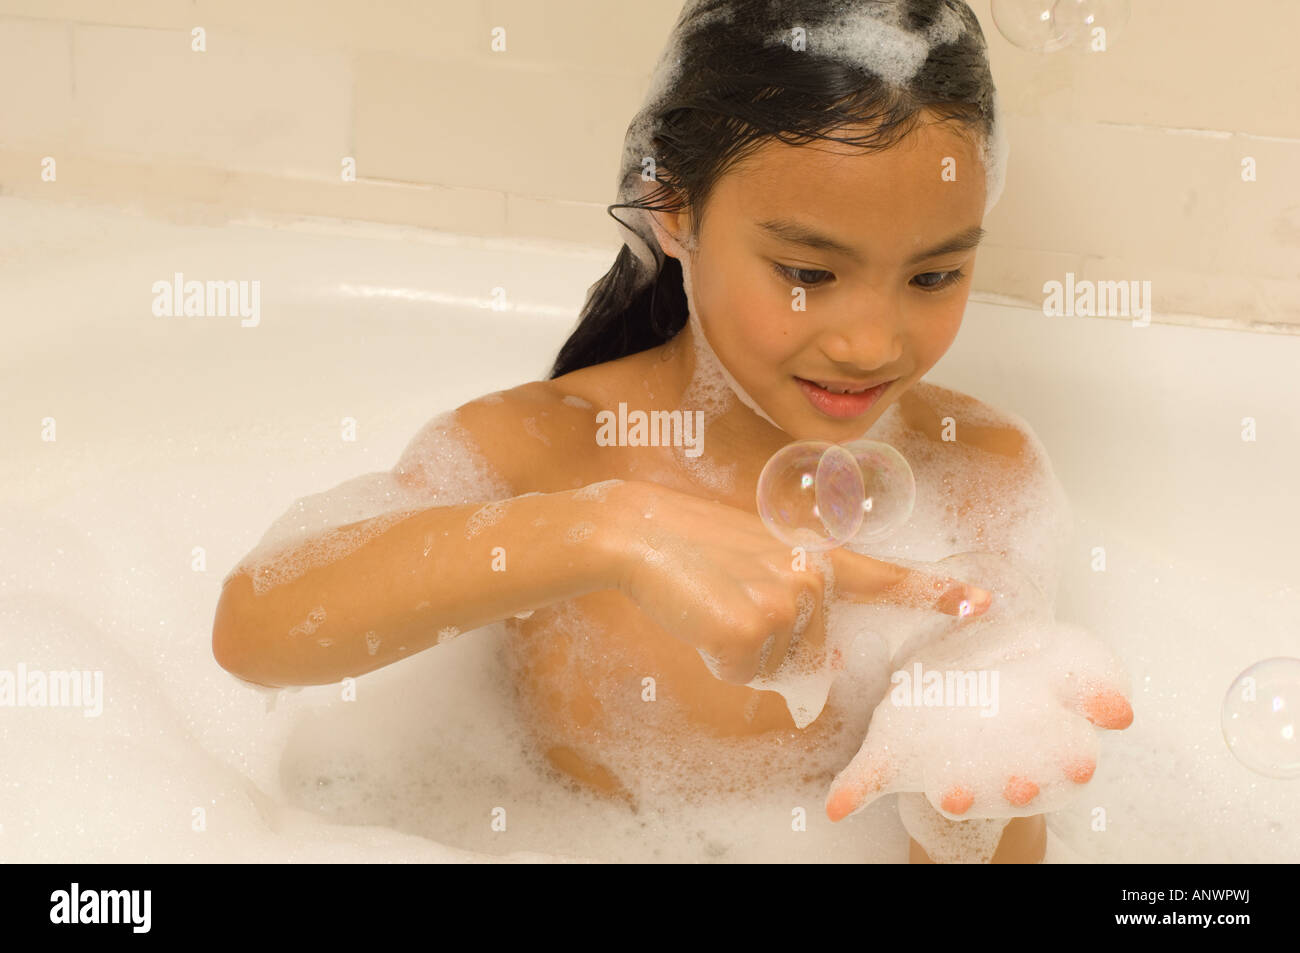 Niña de 7 años jugando en baño de burbujas asiático americano Vietnamita Foto de stock